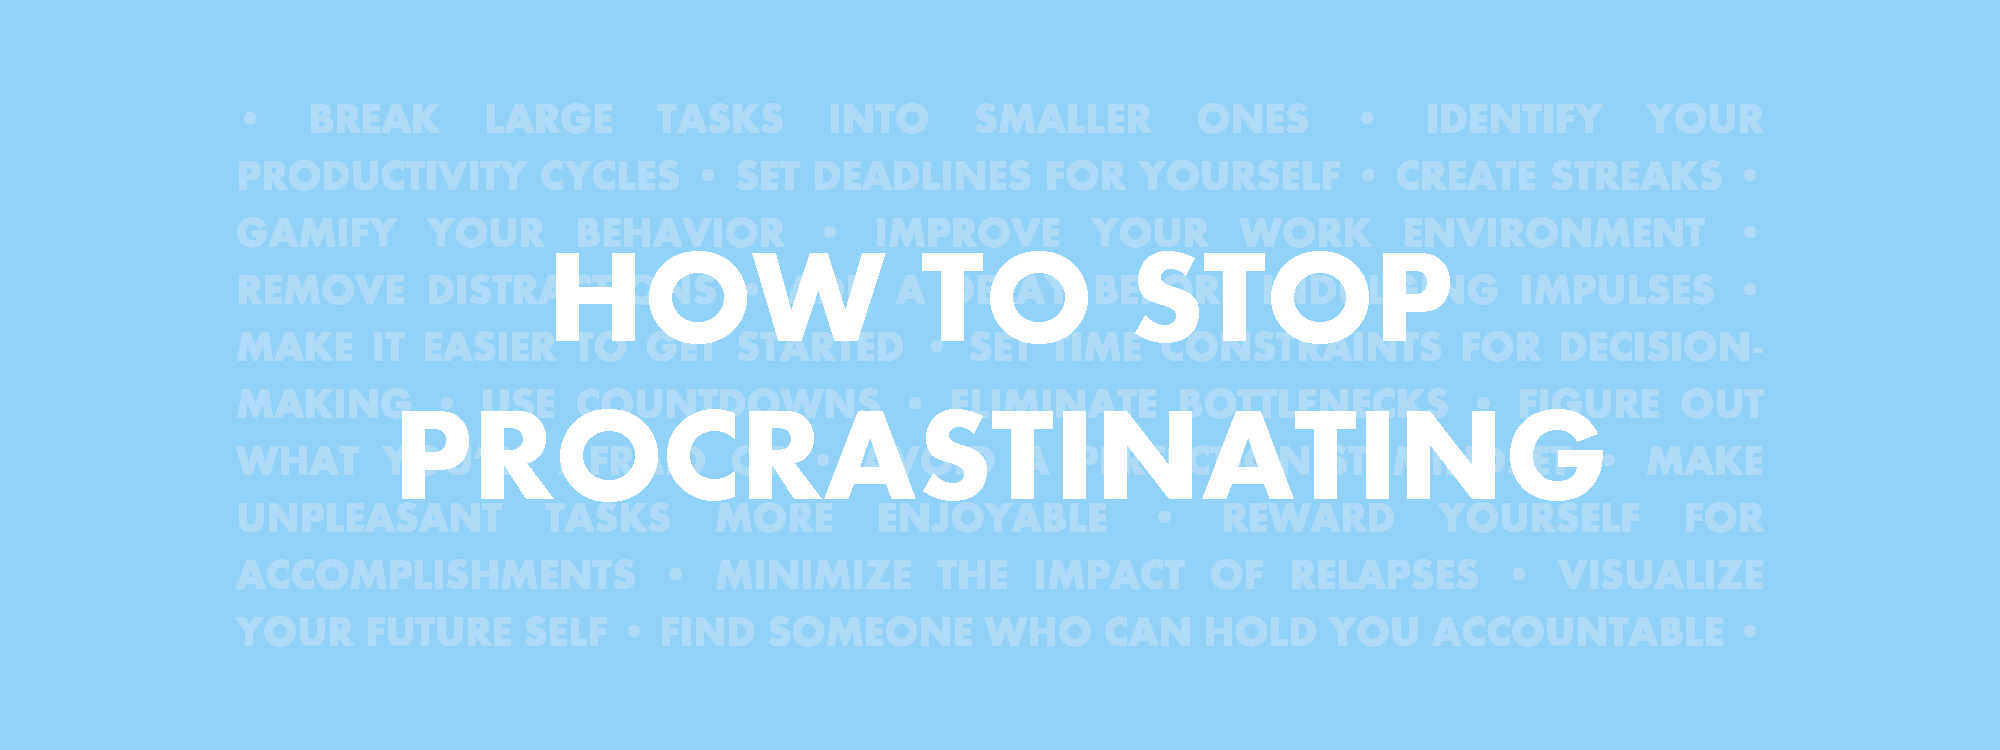 How to stop Procrastinating?